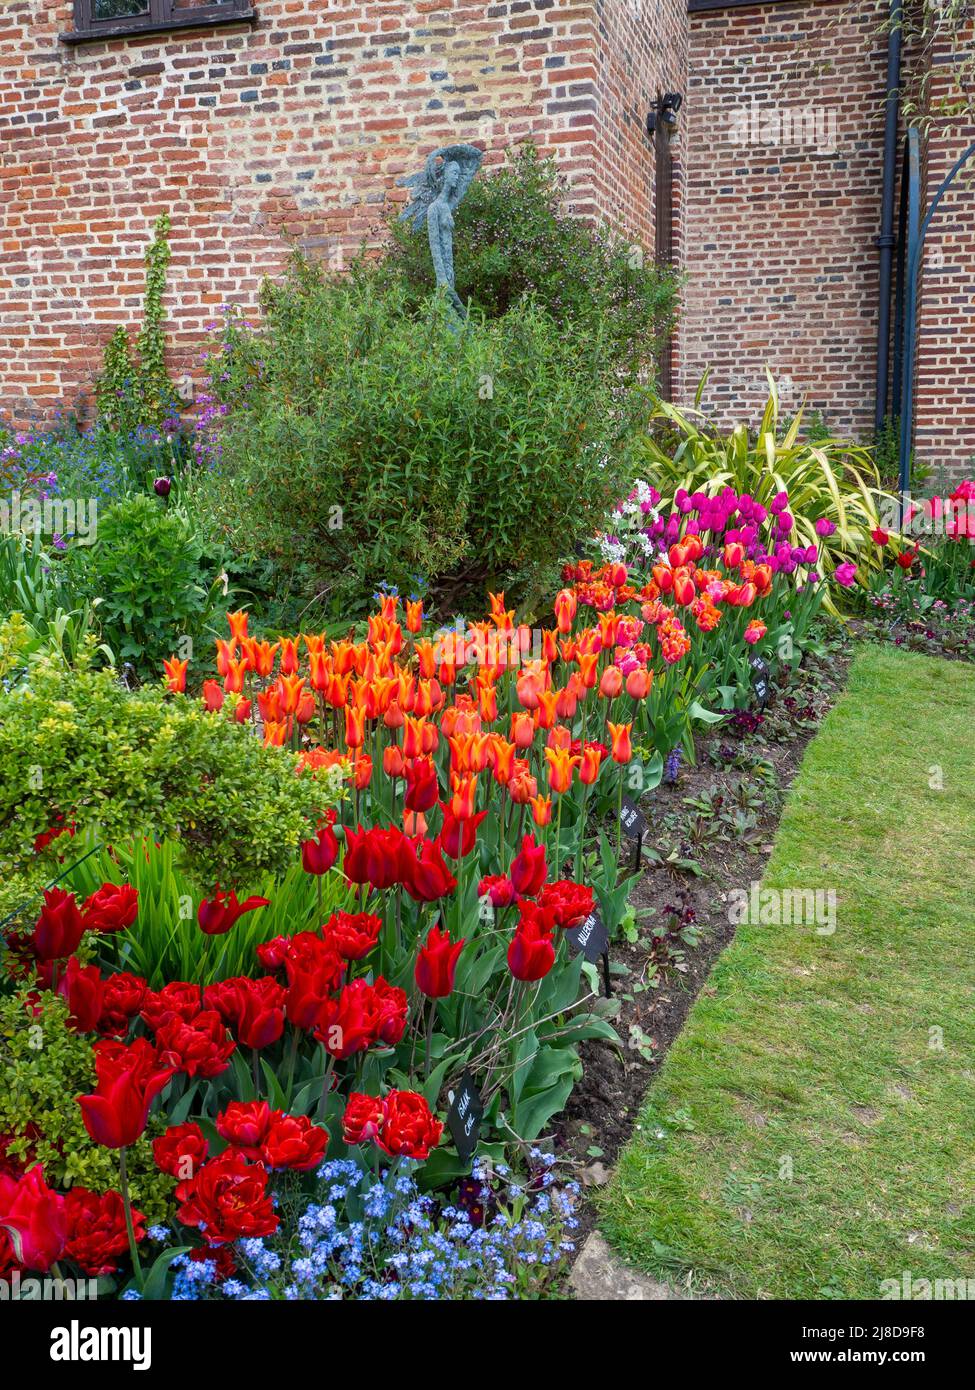 Chenies Manor Garden versunkene Gartenecke beim Tudor-Gebäude. Bunt gefärbte Tulpenarten von rot, rosa und orange. Stockfoto